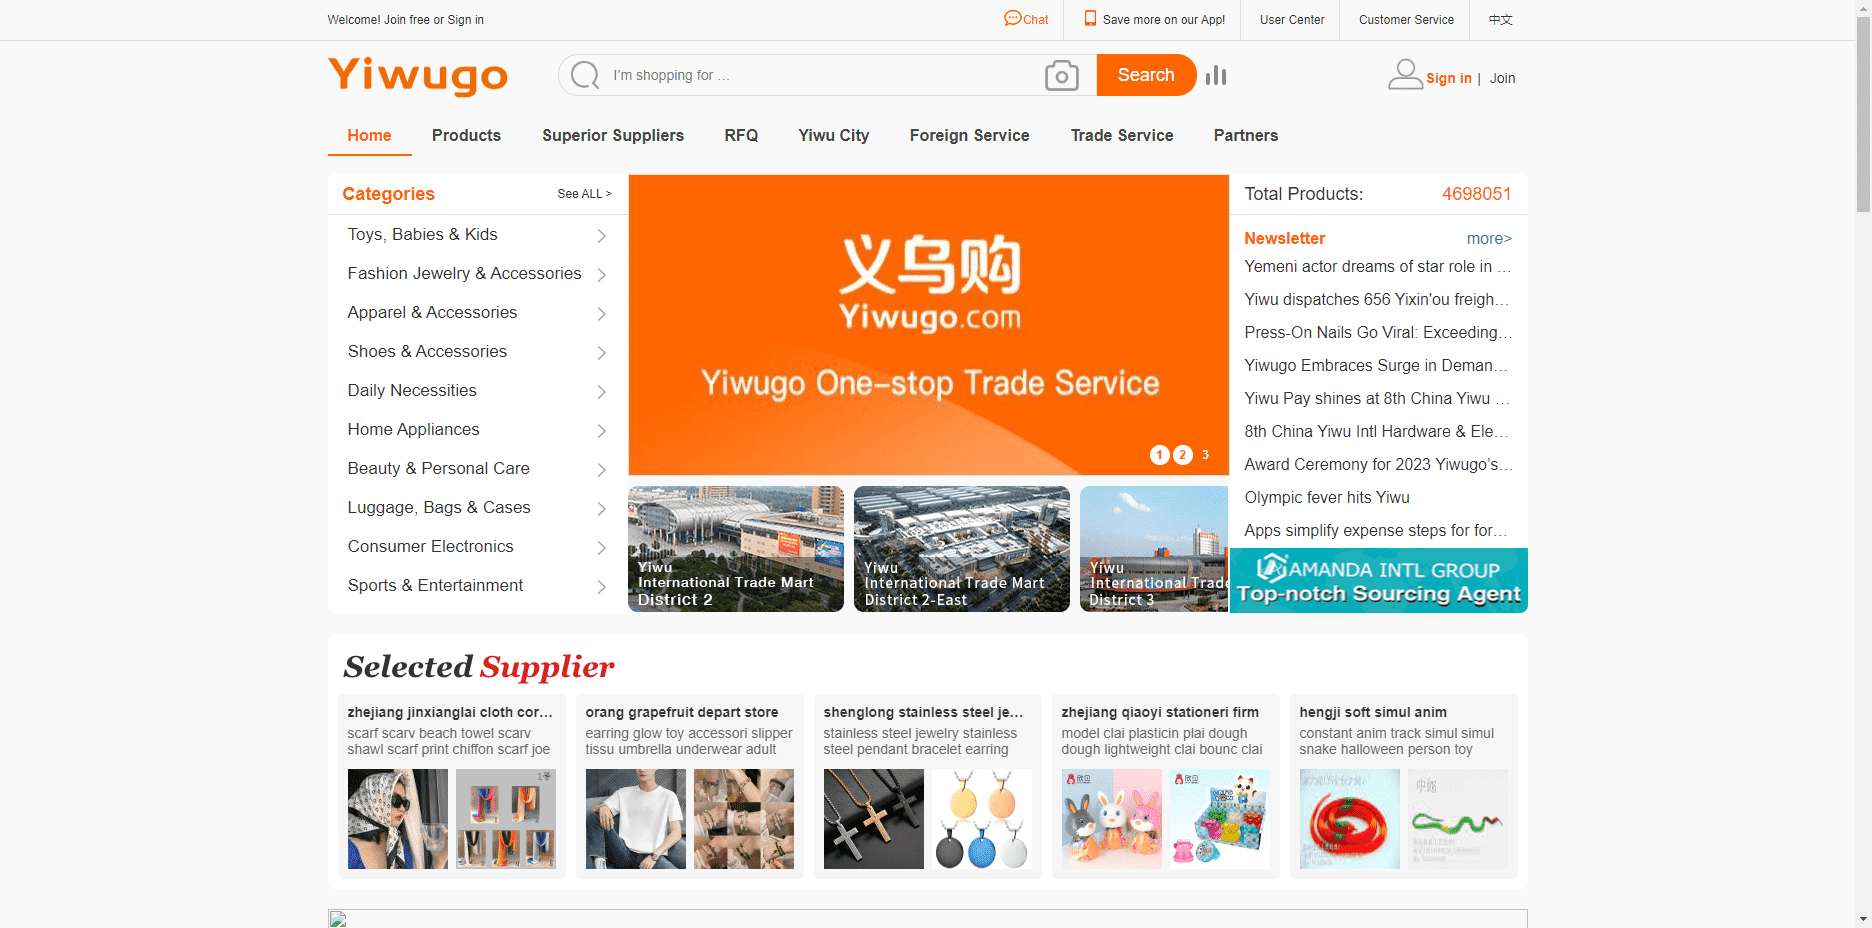 Il sito ufficiale di Yiwugo